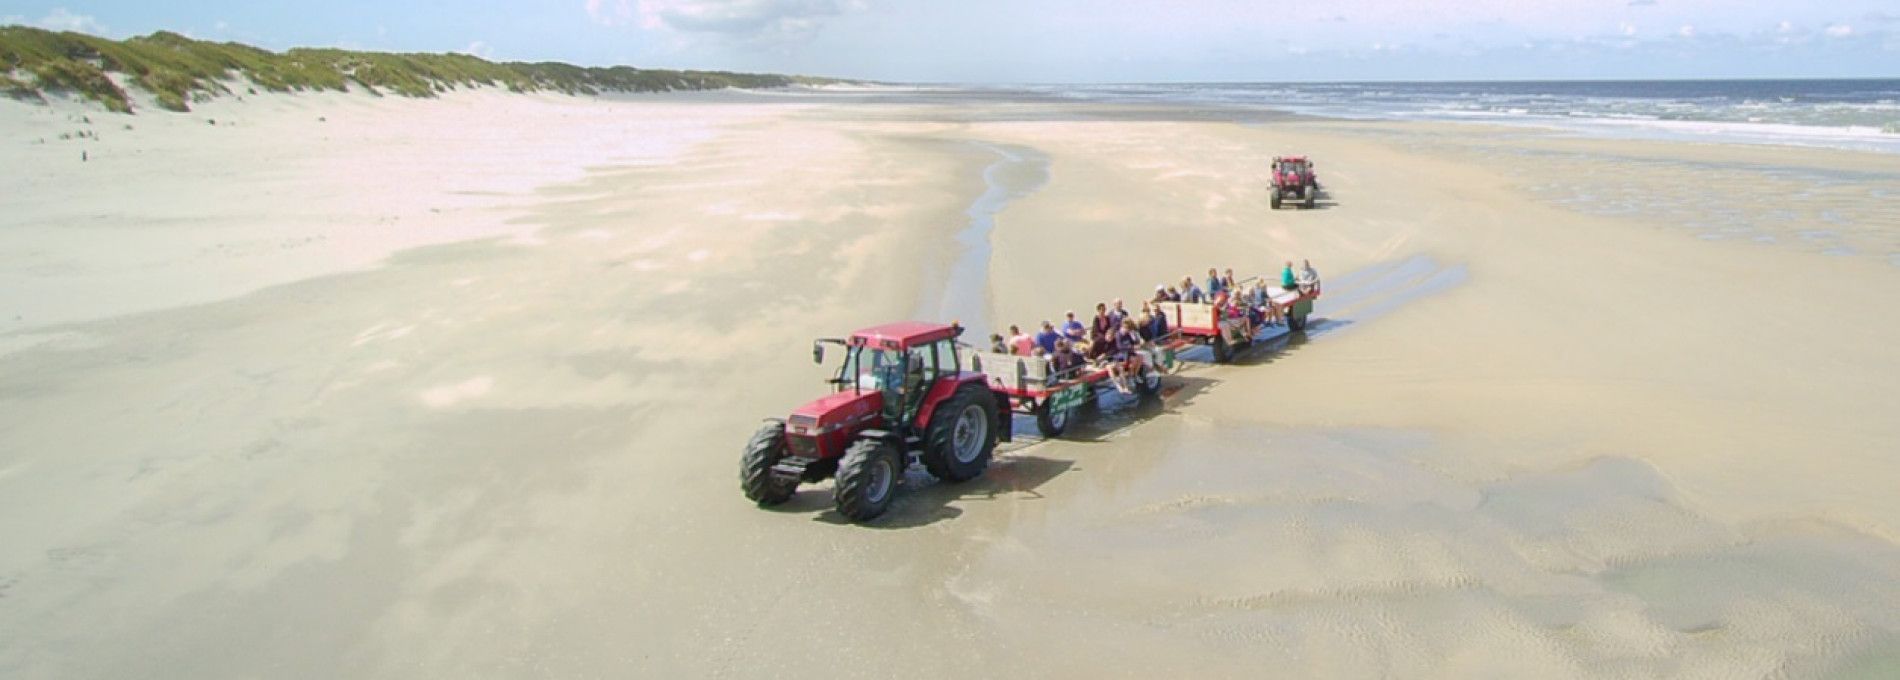 Traktorfahrten am Strand - VVV Ameland